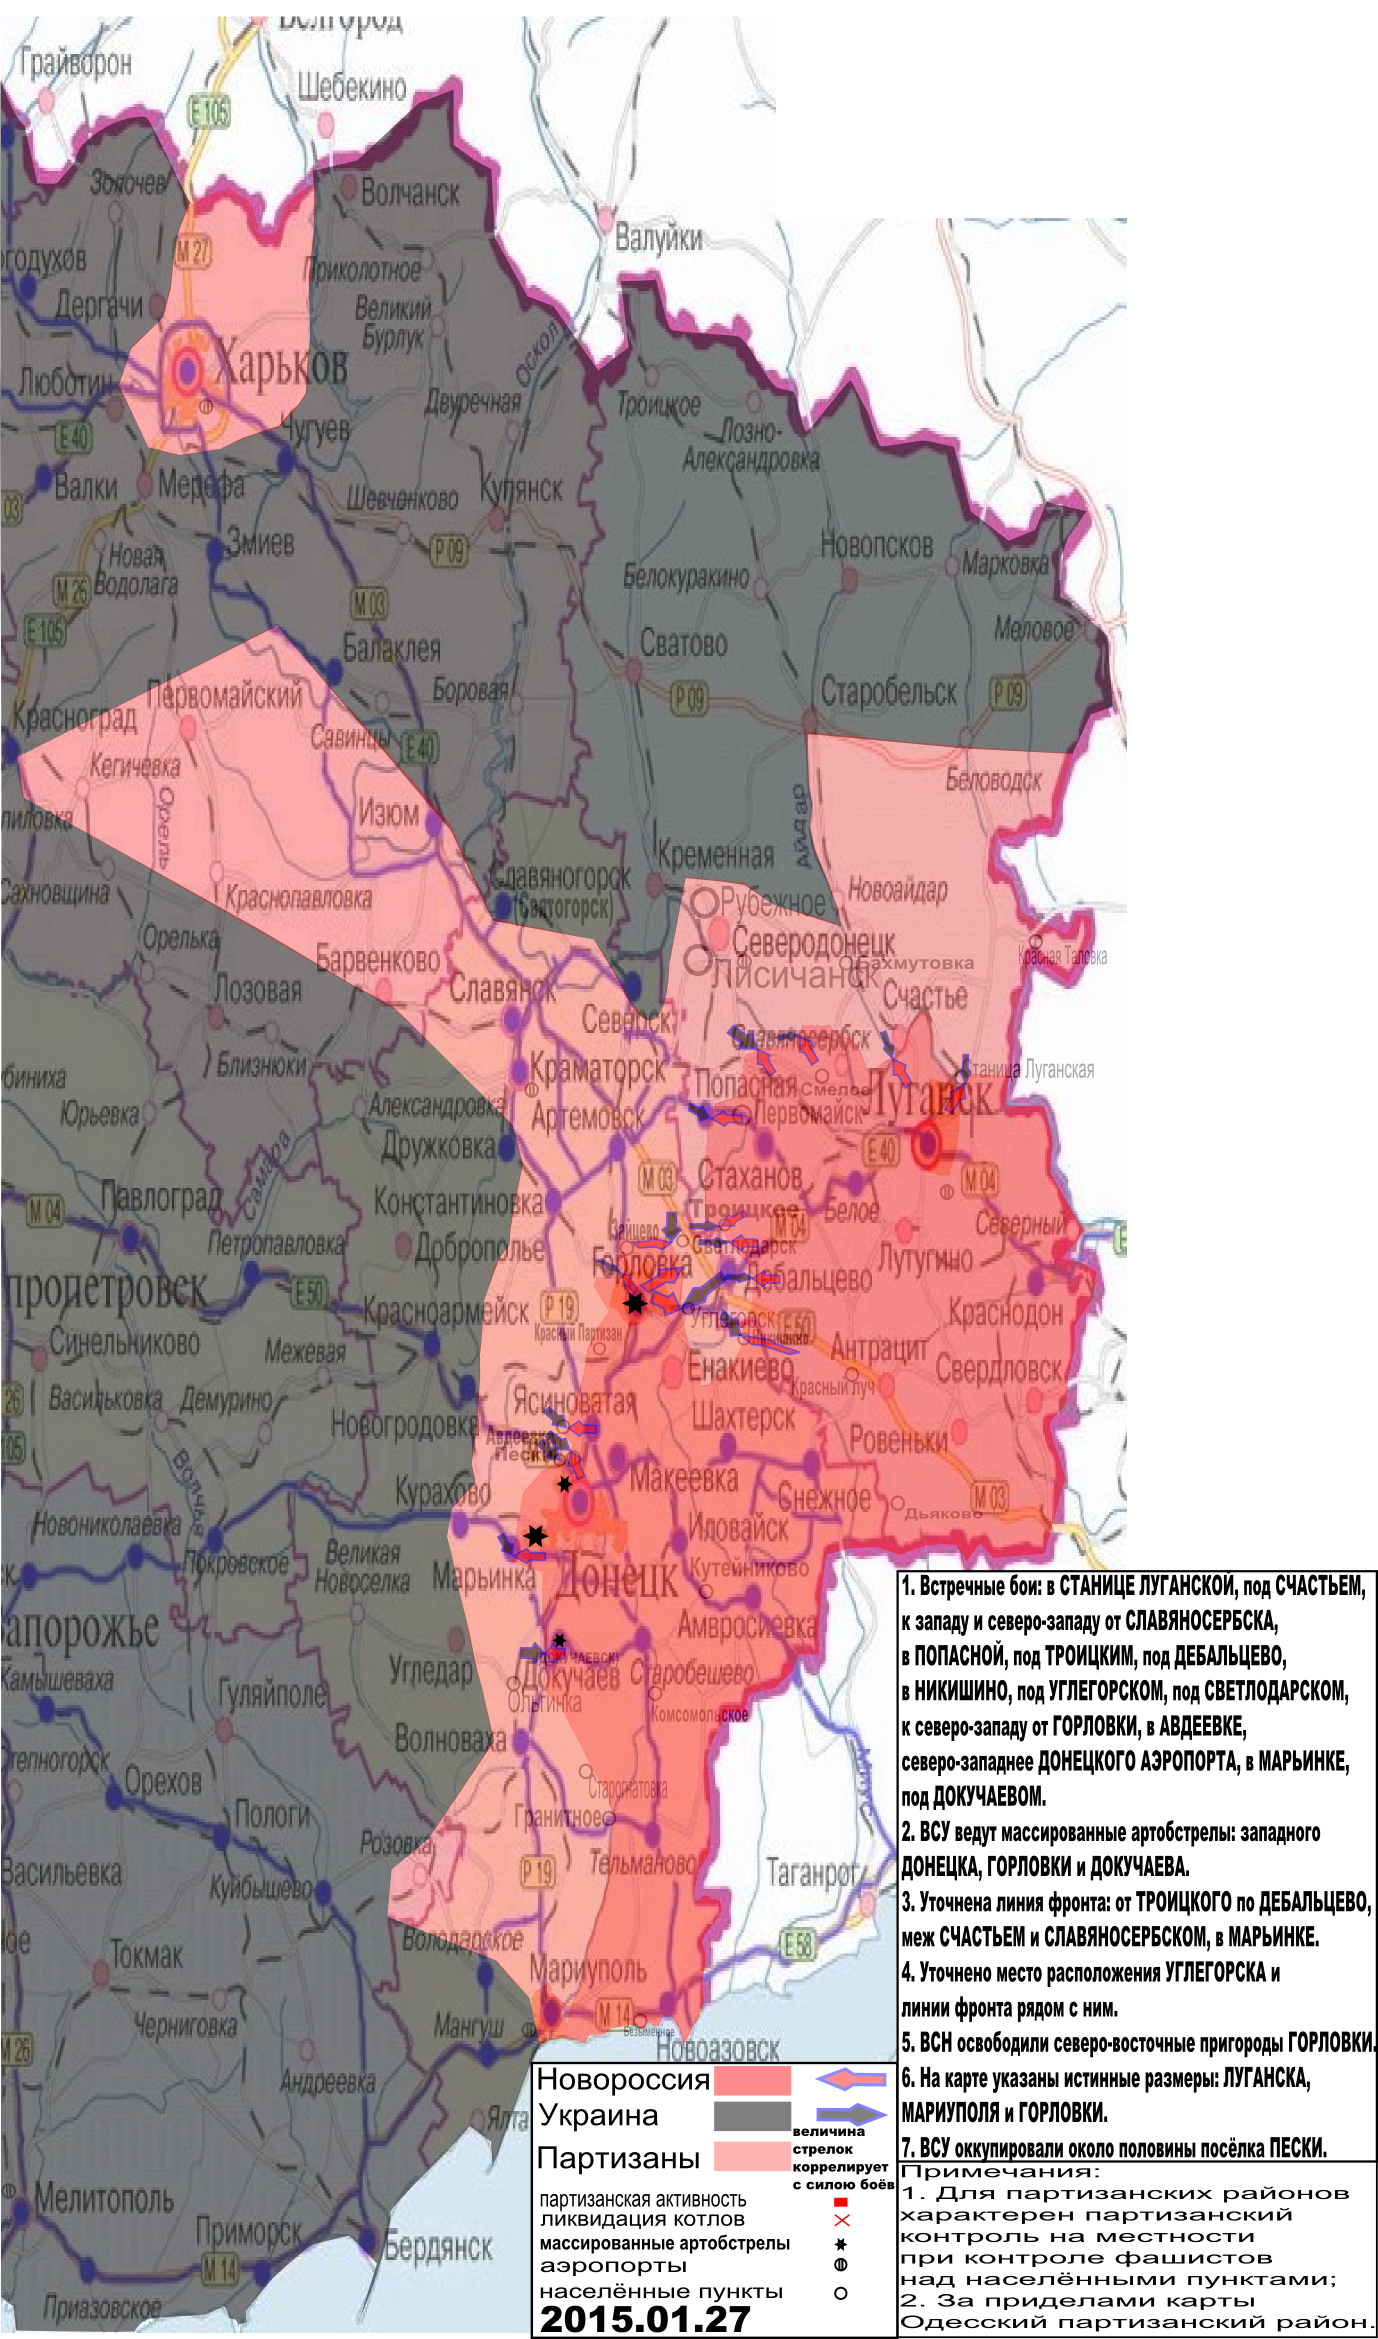 Карта боевых действий и событий в Новороссии с обозначением зон партизанской активности за 27 января 2015